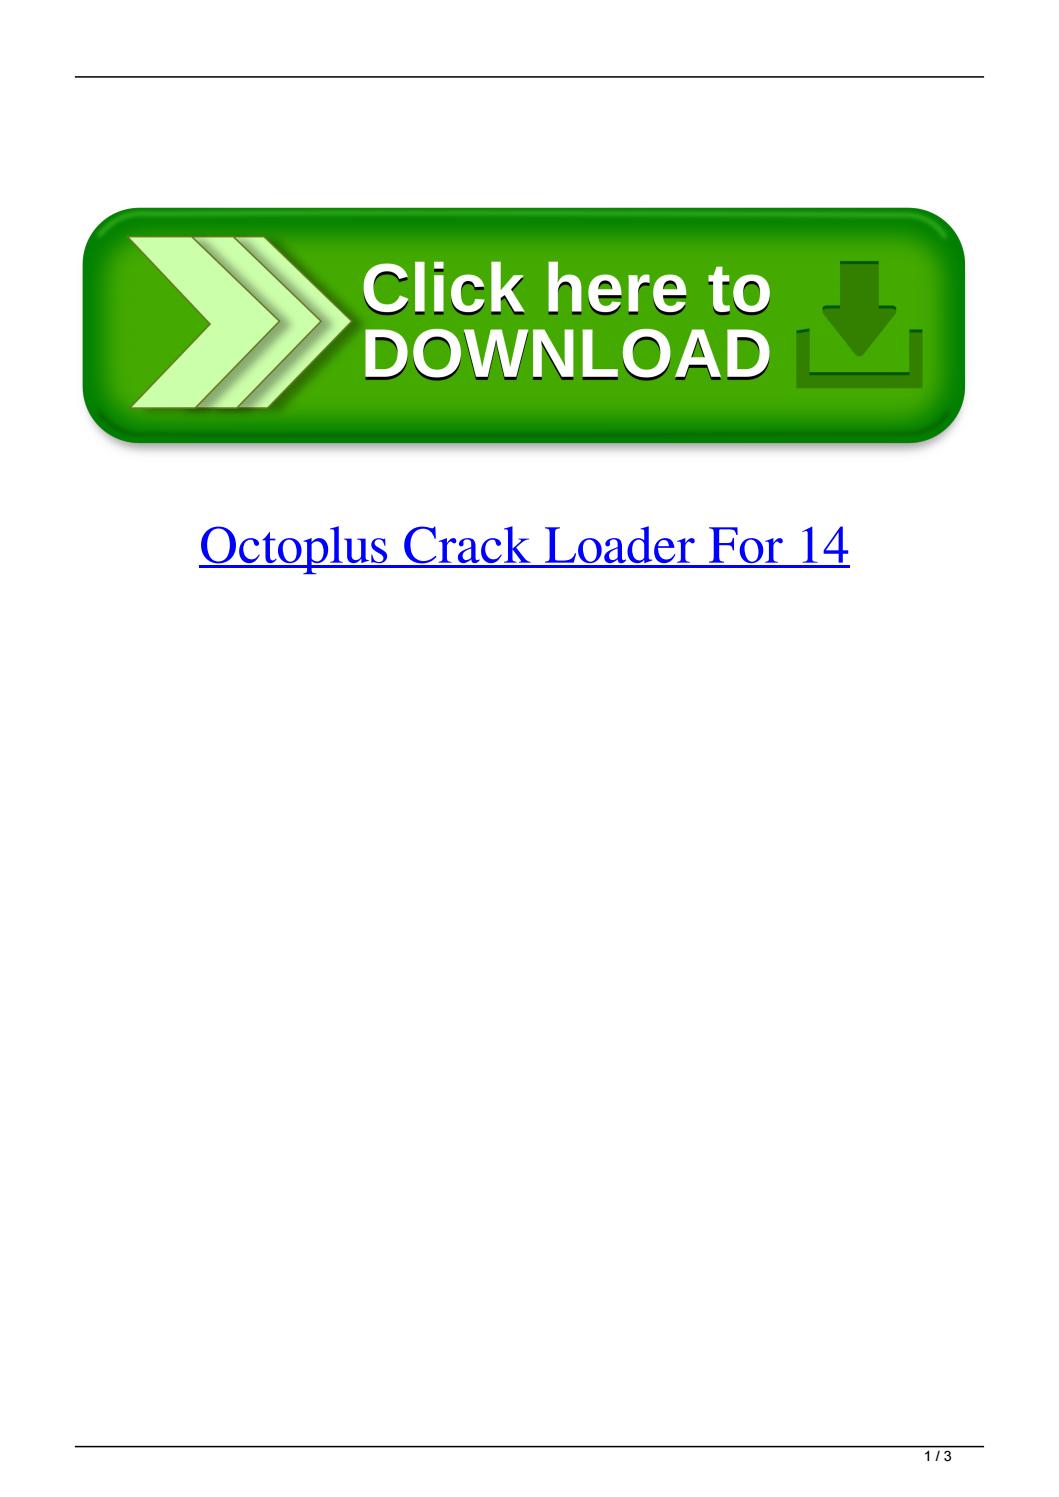 octoplus lg loader download